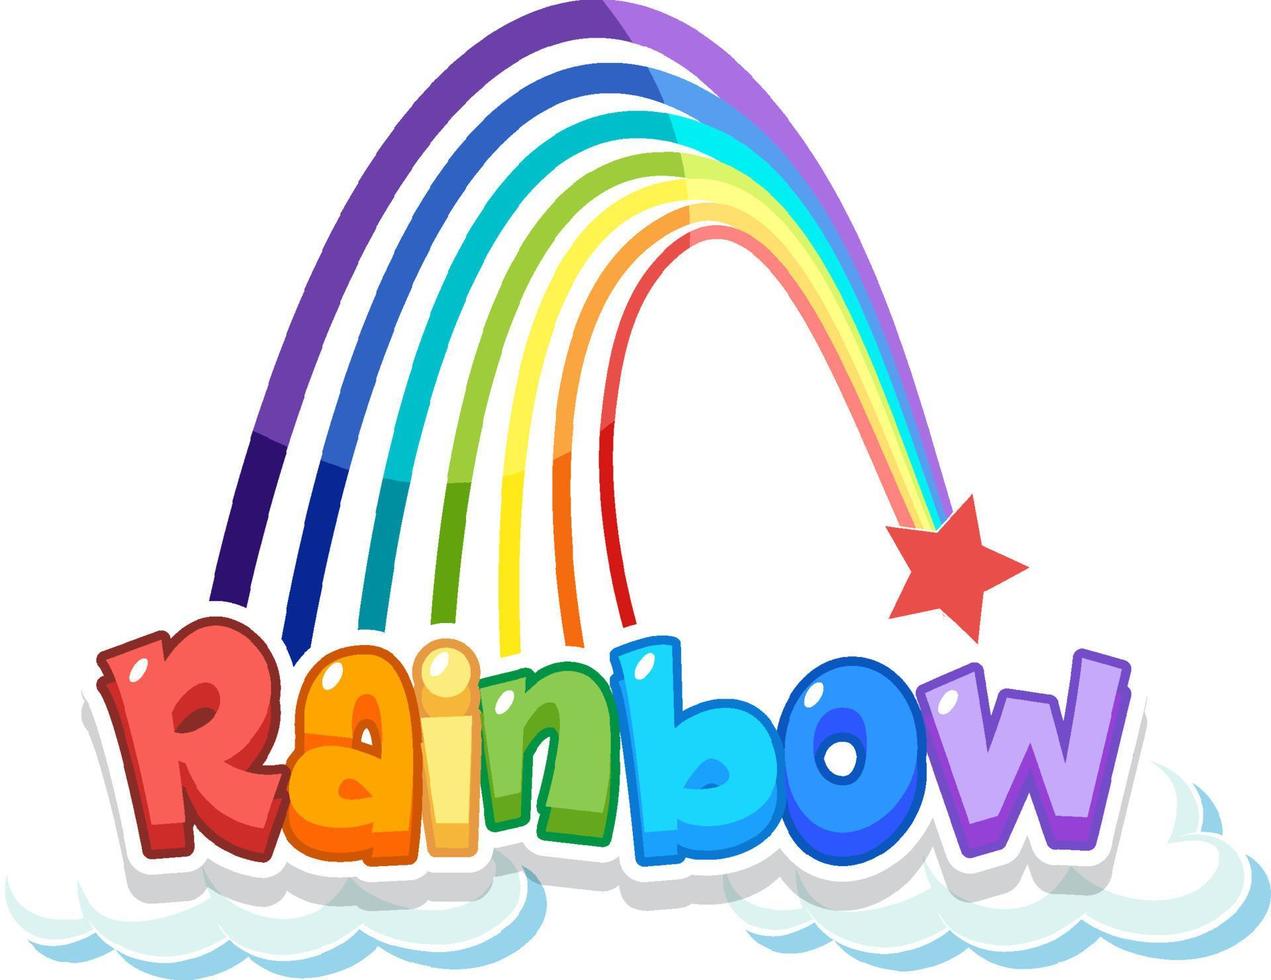 Rainbow word logo on the cloud vector